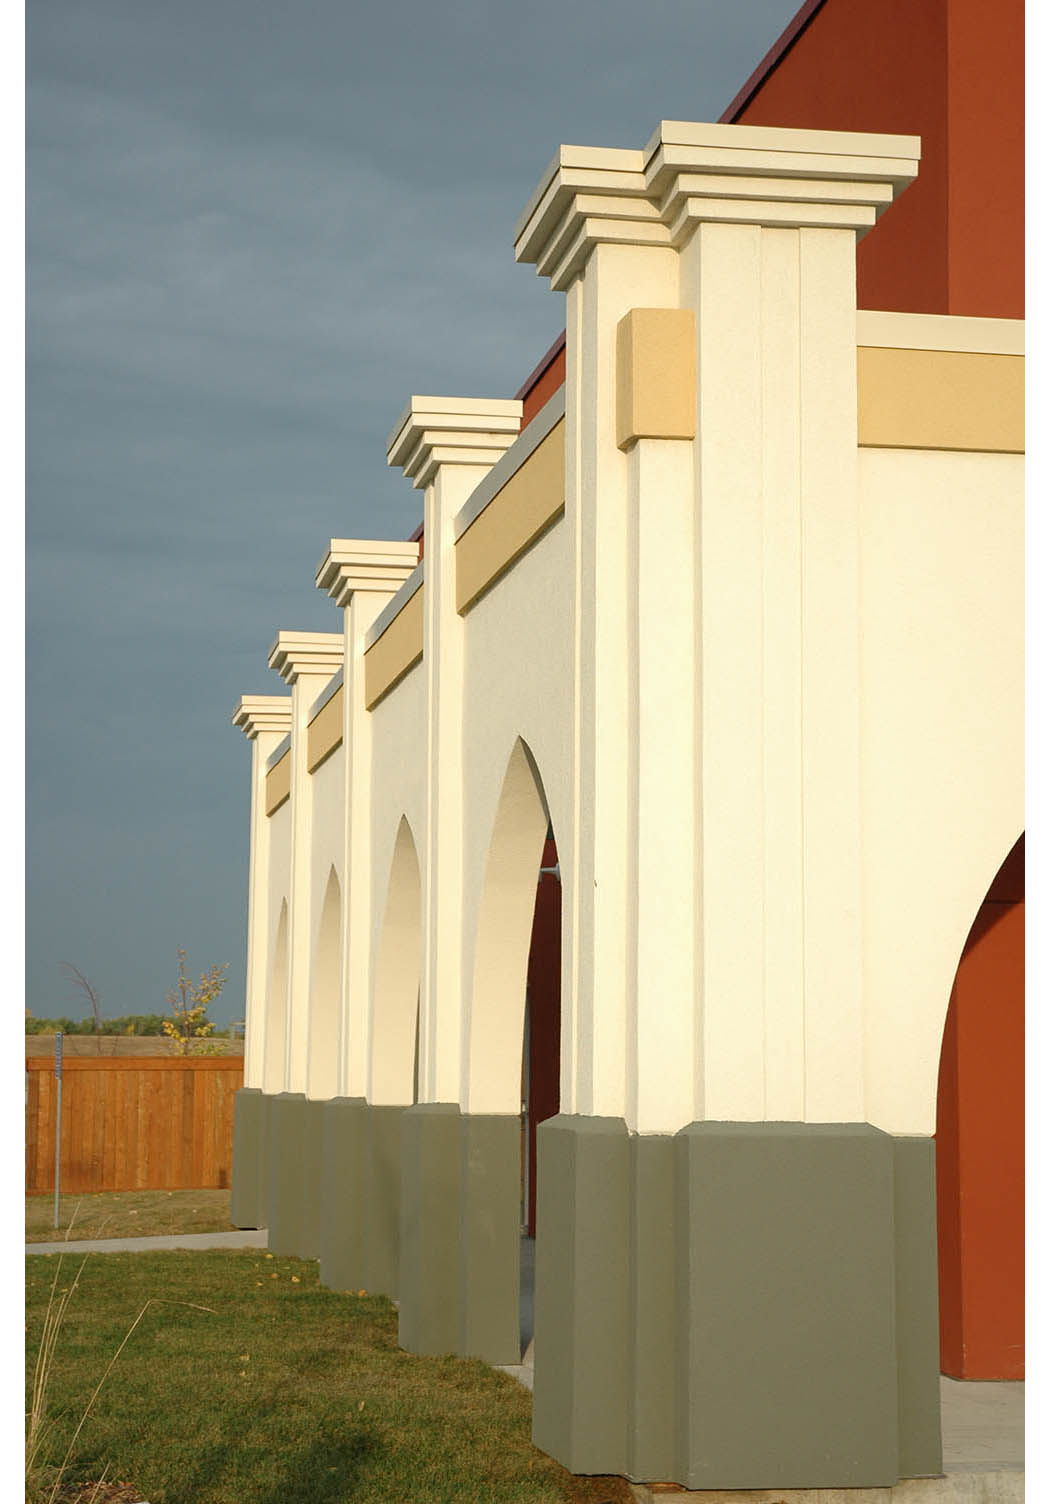  Punjab Cultural Centre, exterior detail photo of building / Photo: Derrick Finch 